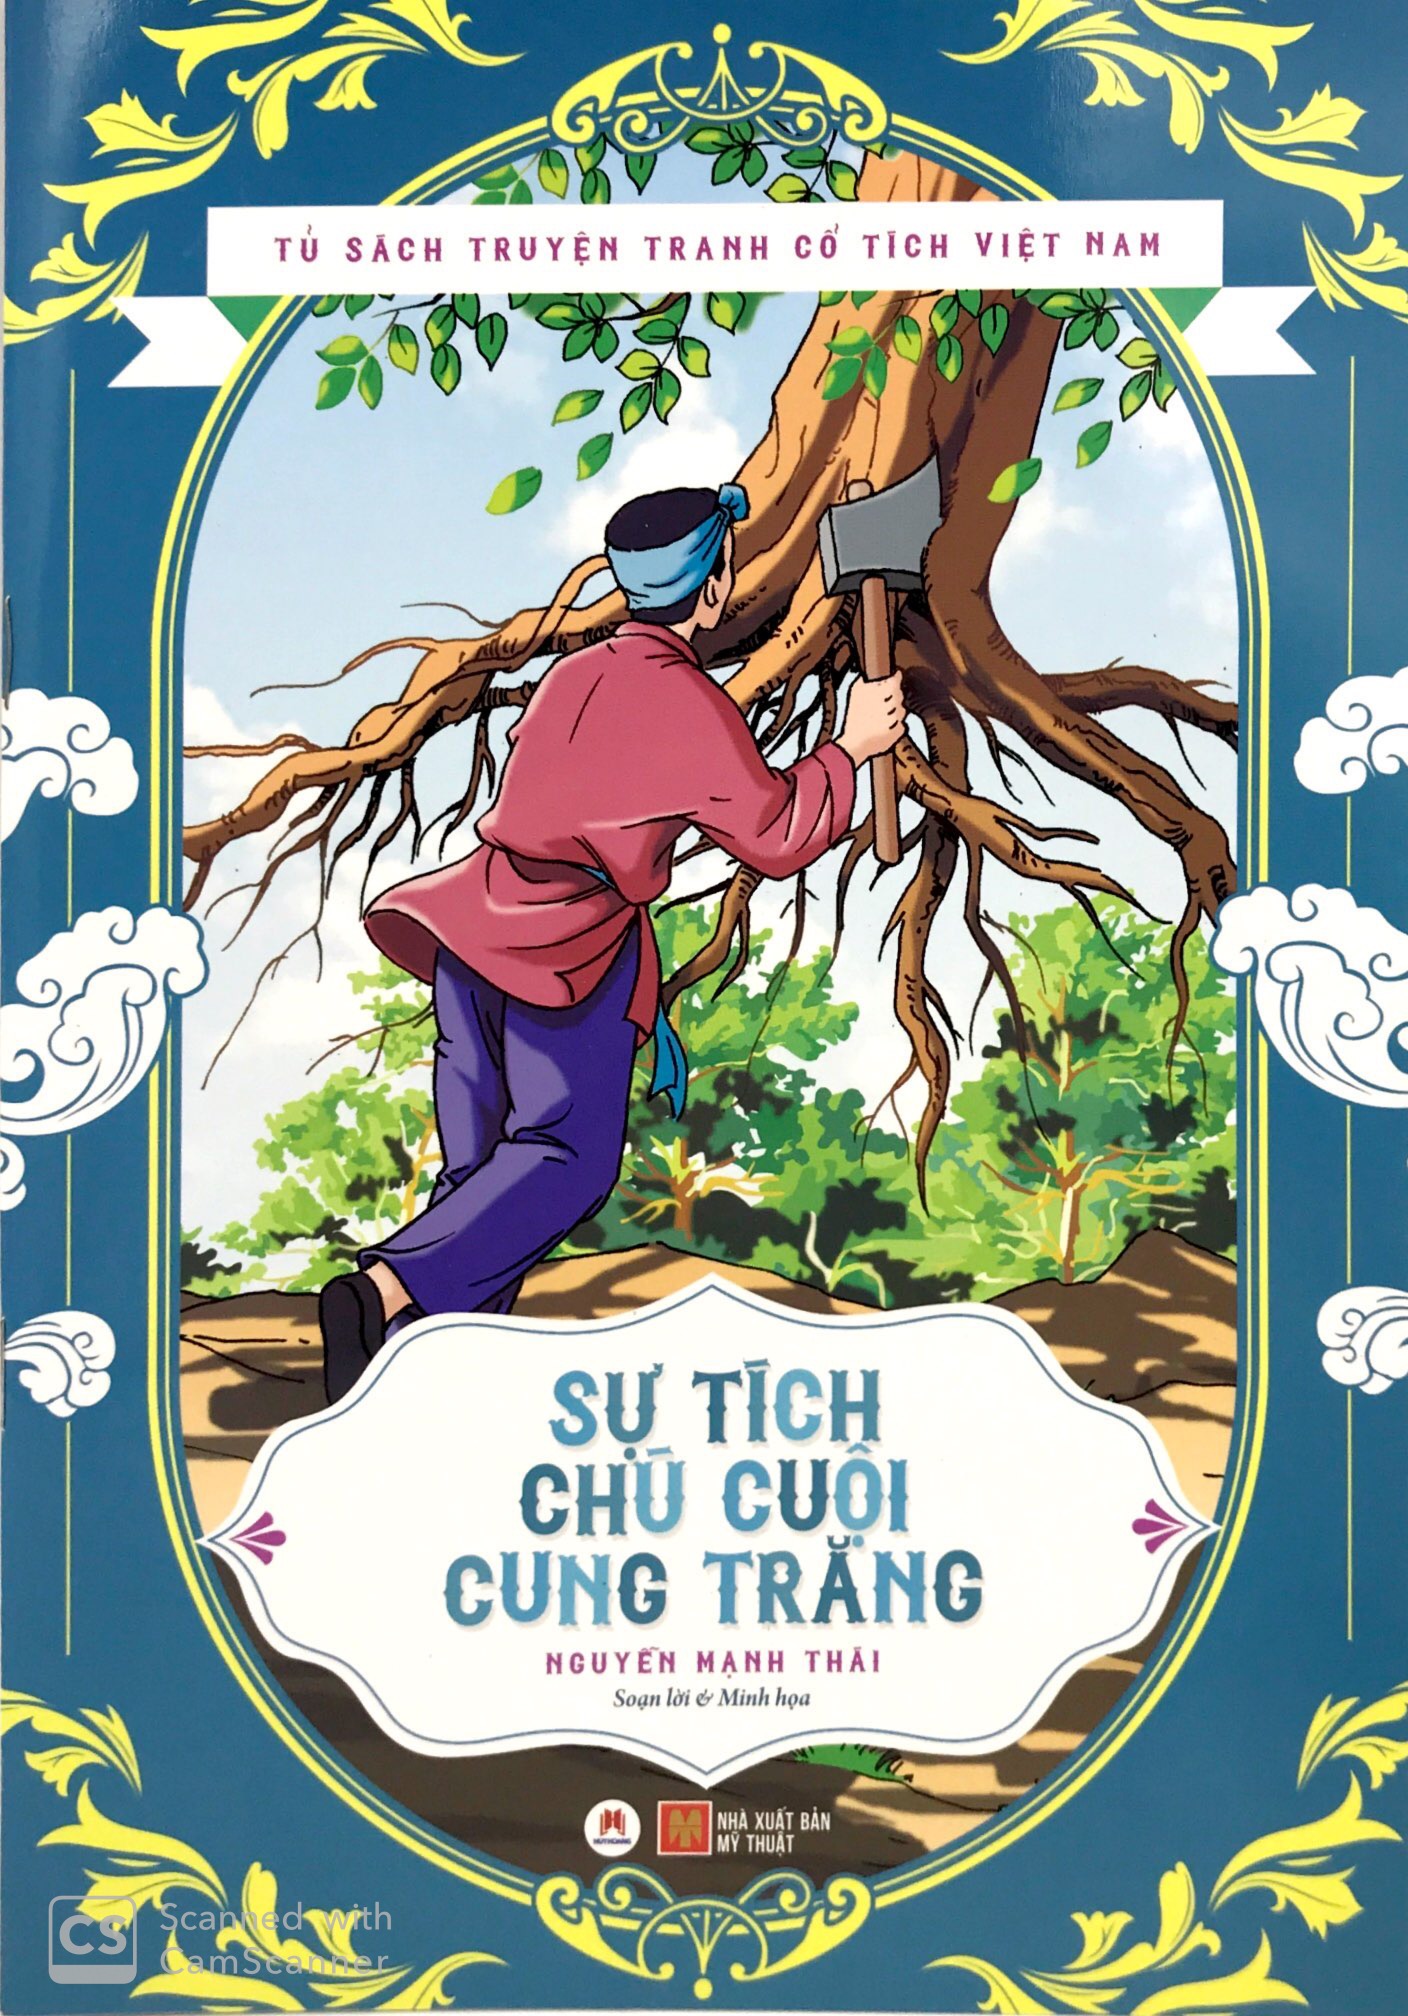 Truyện cổ tích chú Cuội luôn được yêu thích và trân trọng trong văn hóa dân gian Việt Nam. Khi đón xem các bức tranh minh họa, bạn sẽ được tham gia vào một chuyến phiêu lưu tuyệt vời cùng chú Cuội, tìm kiếm vợ chồng chị Hằng, và tìm được hạnh phúc bên gia đình.